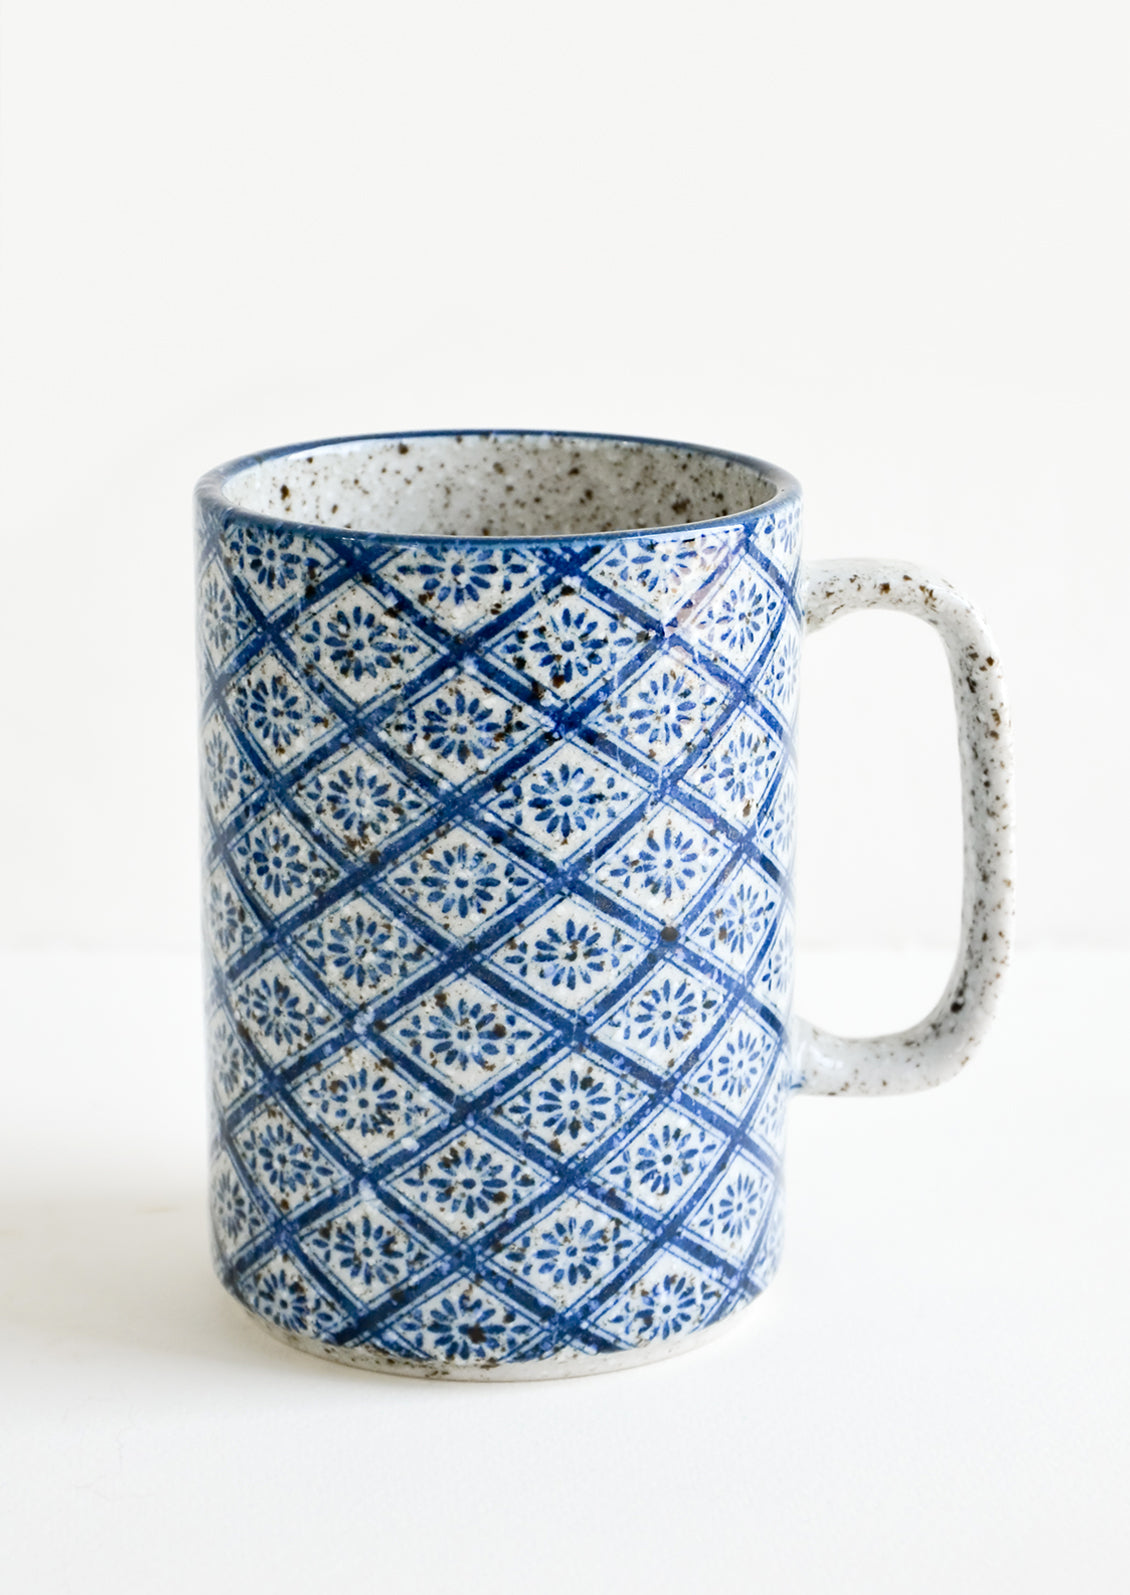 Dodo Dutch Delft Blue Tile Ceramic Mug 11oz 